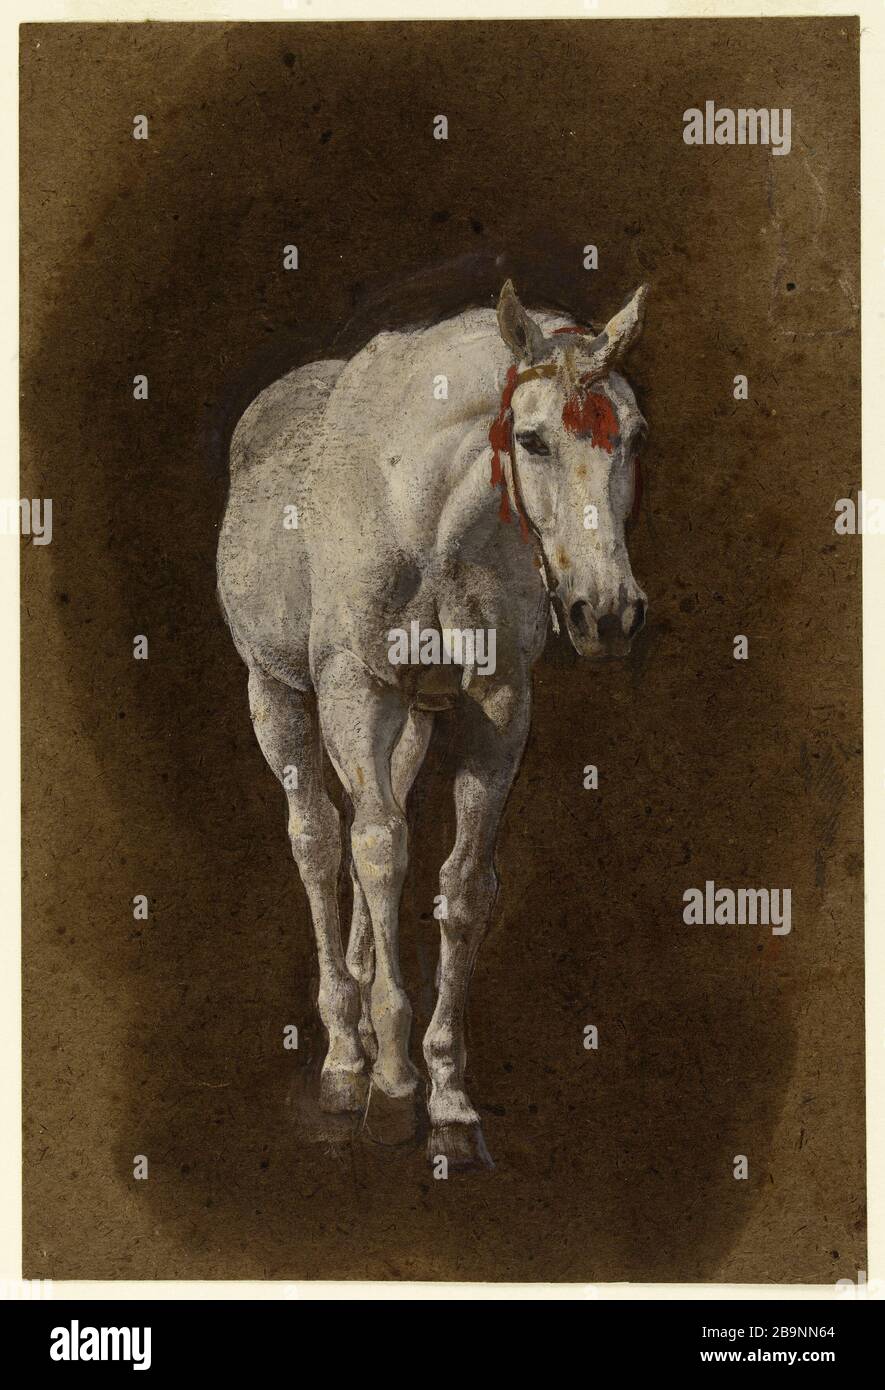 Horse Léon Bonnat (1833-1922). Cheval. Gouache sur traits de crayon Conté sur Papier. Musée des Beaux-Arts de la Ville de Paris, Petit Palais. Stockfoto